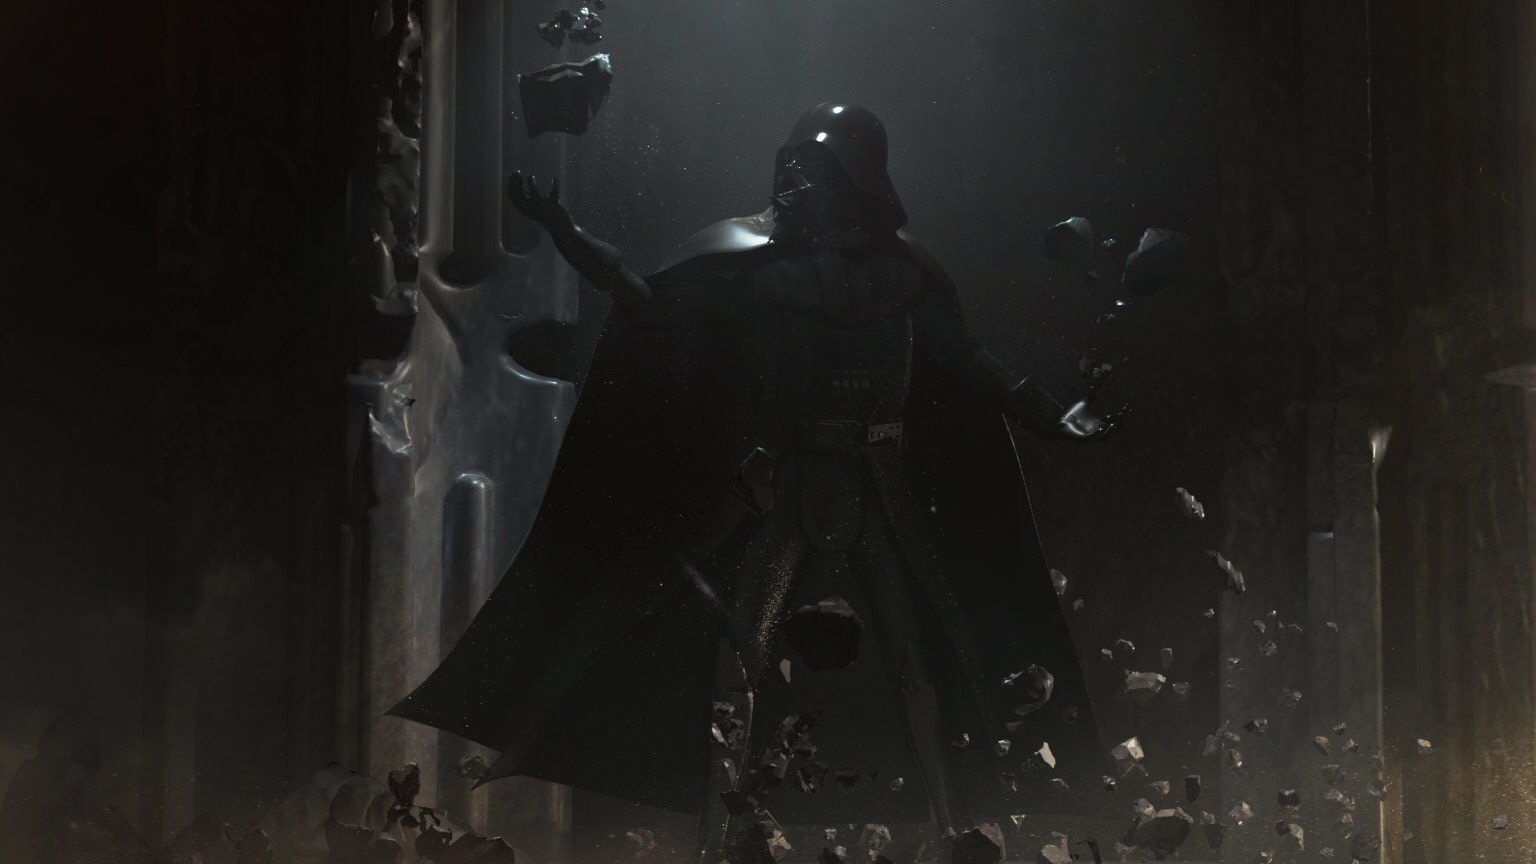 SDCC 2019: Vader Immortal - Episode II Concept Art and Details Revealed